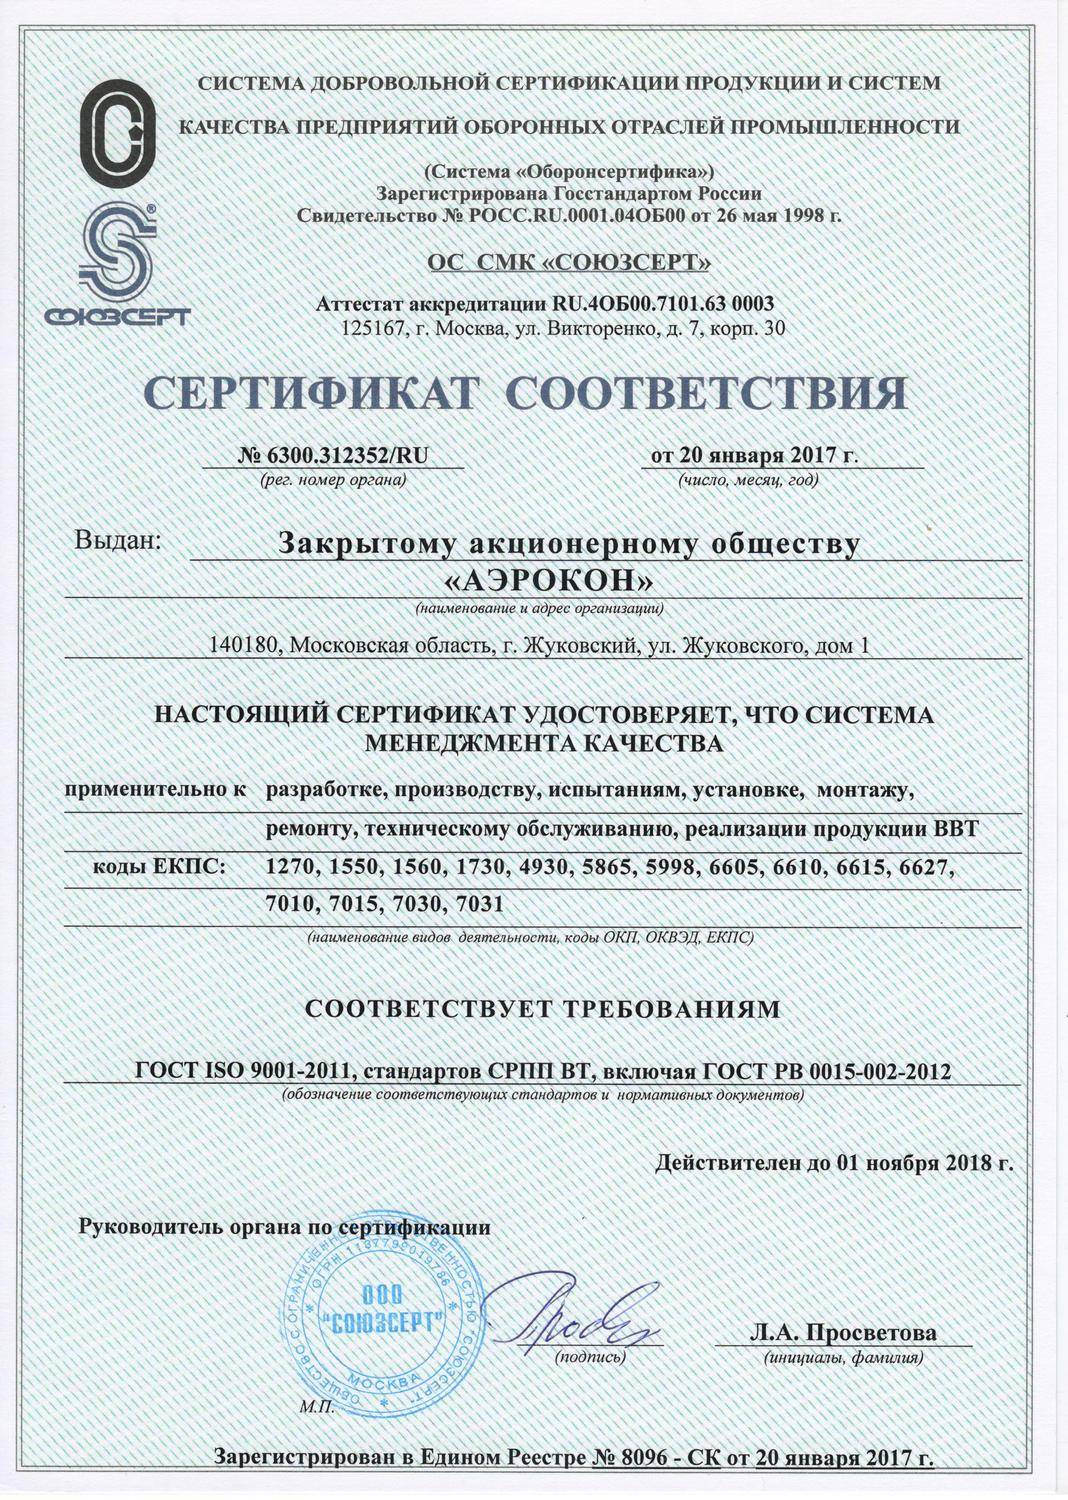 Получить сертификат гост рв 0015-002-2020 - promoboron.ru